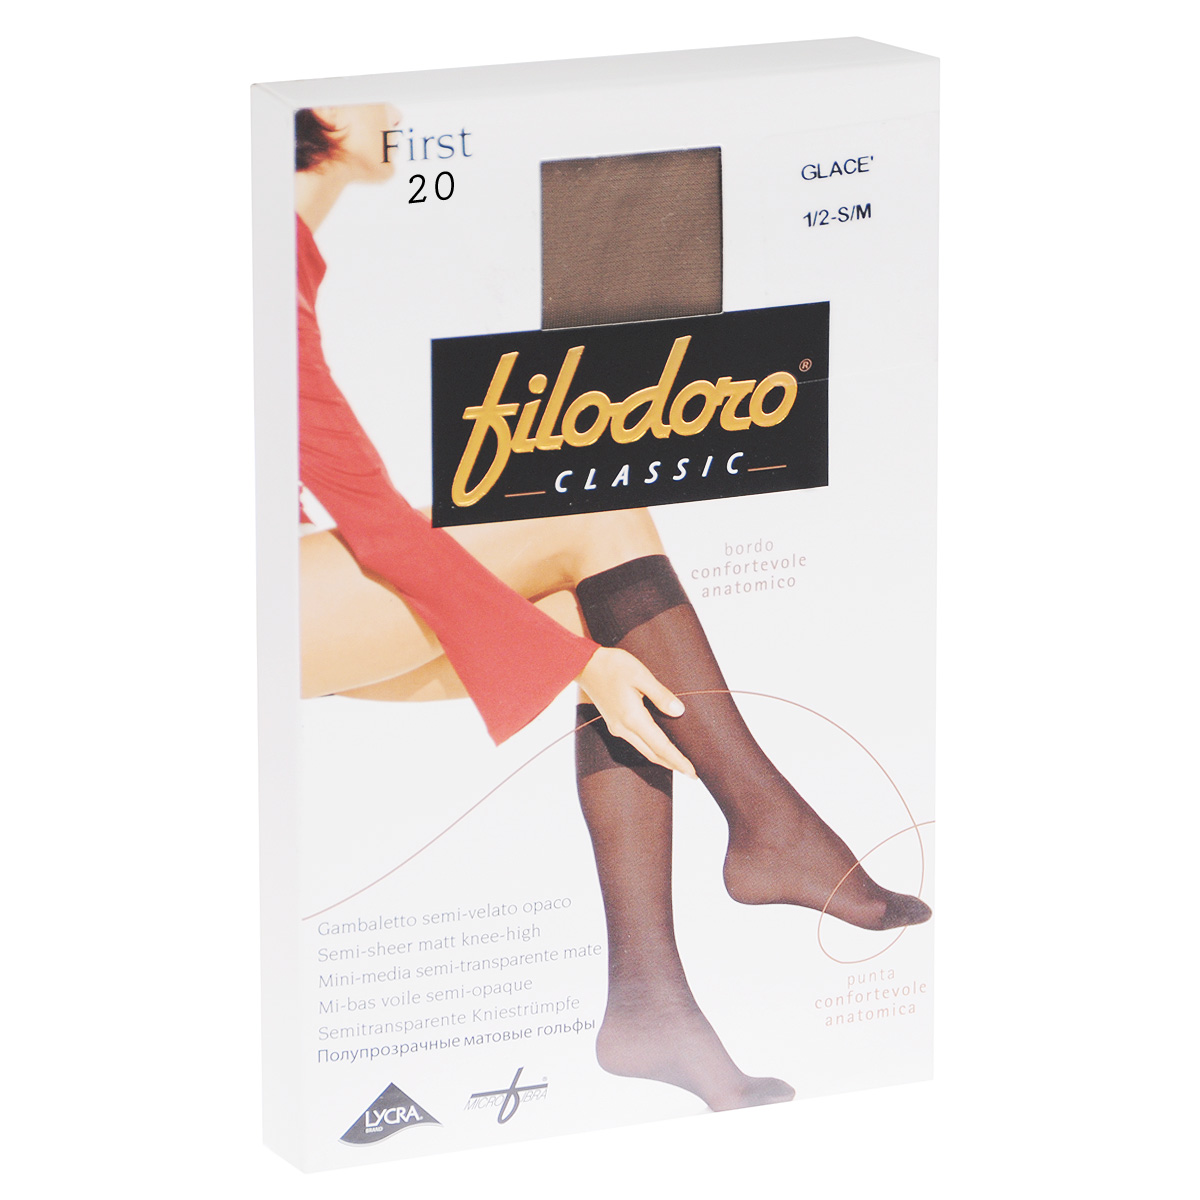 Гольфы женские Filodoro Classic First 20, цвет: Playa (телесный). C110303FC. Размер 3/4 (M/L)